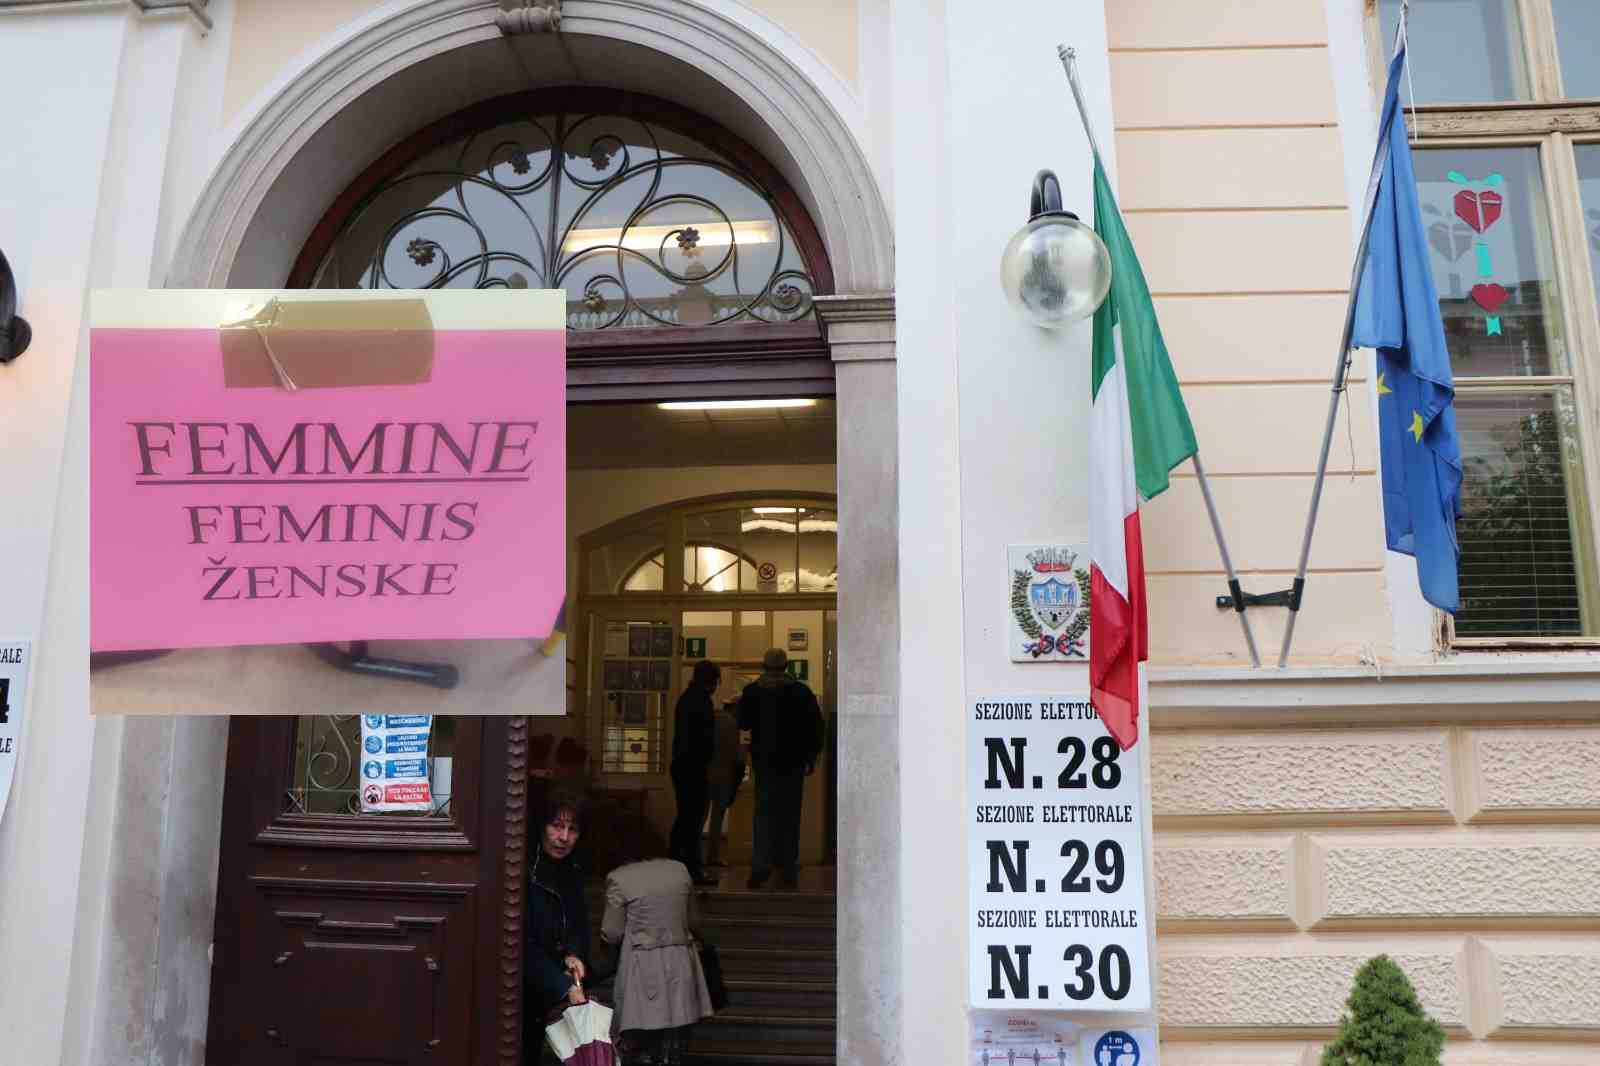 Immagine per A Gorizia le liste elettorali sono per «uomini e femmine» e non «uomini e donne», ci scrive una lettrice